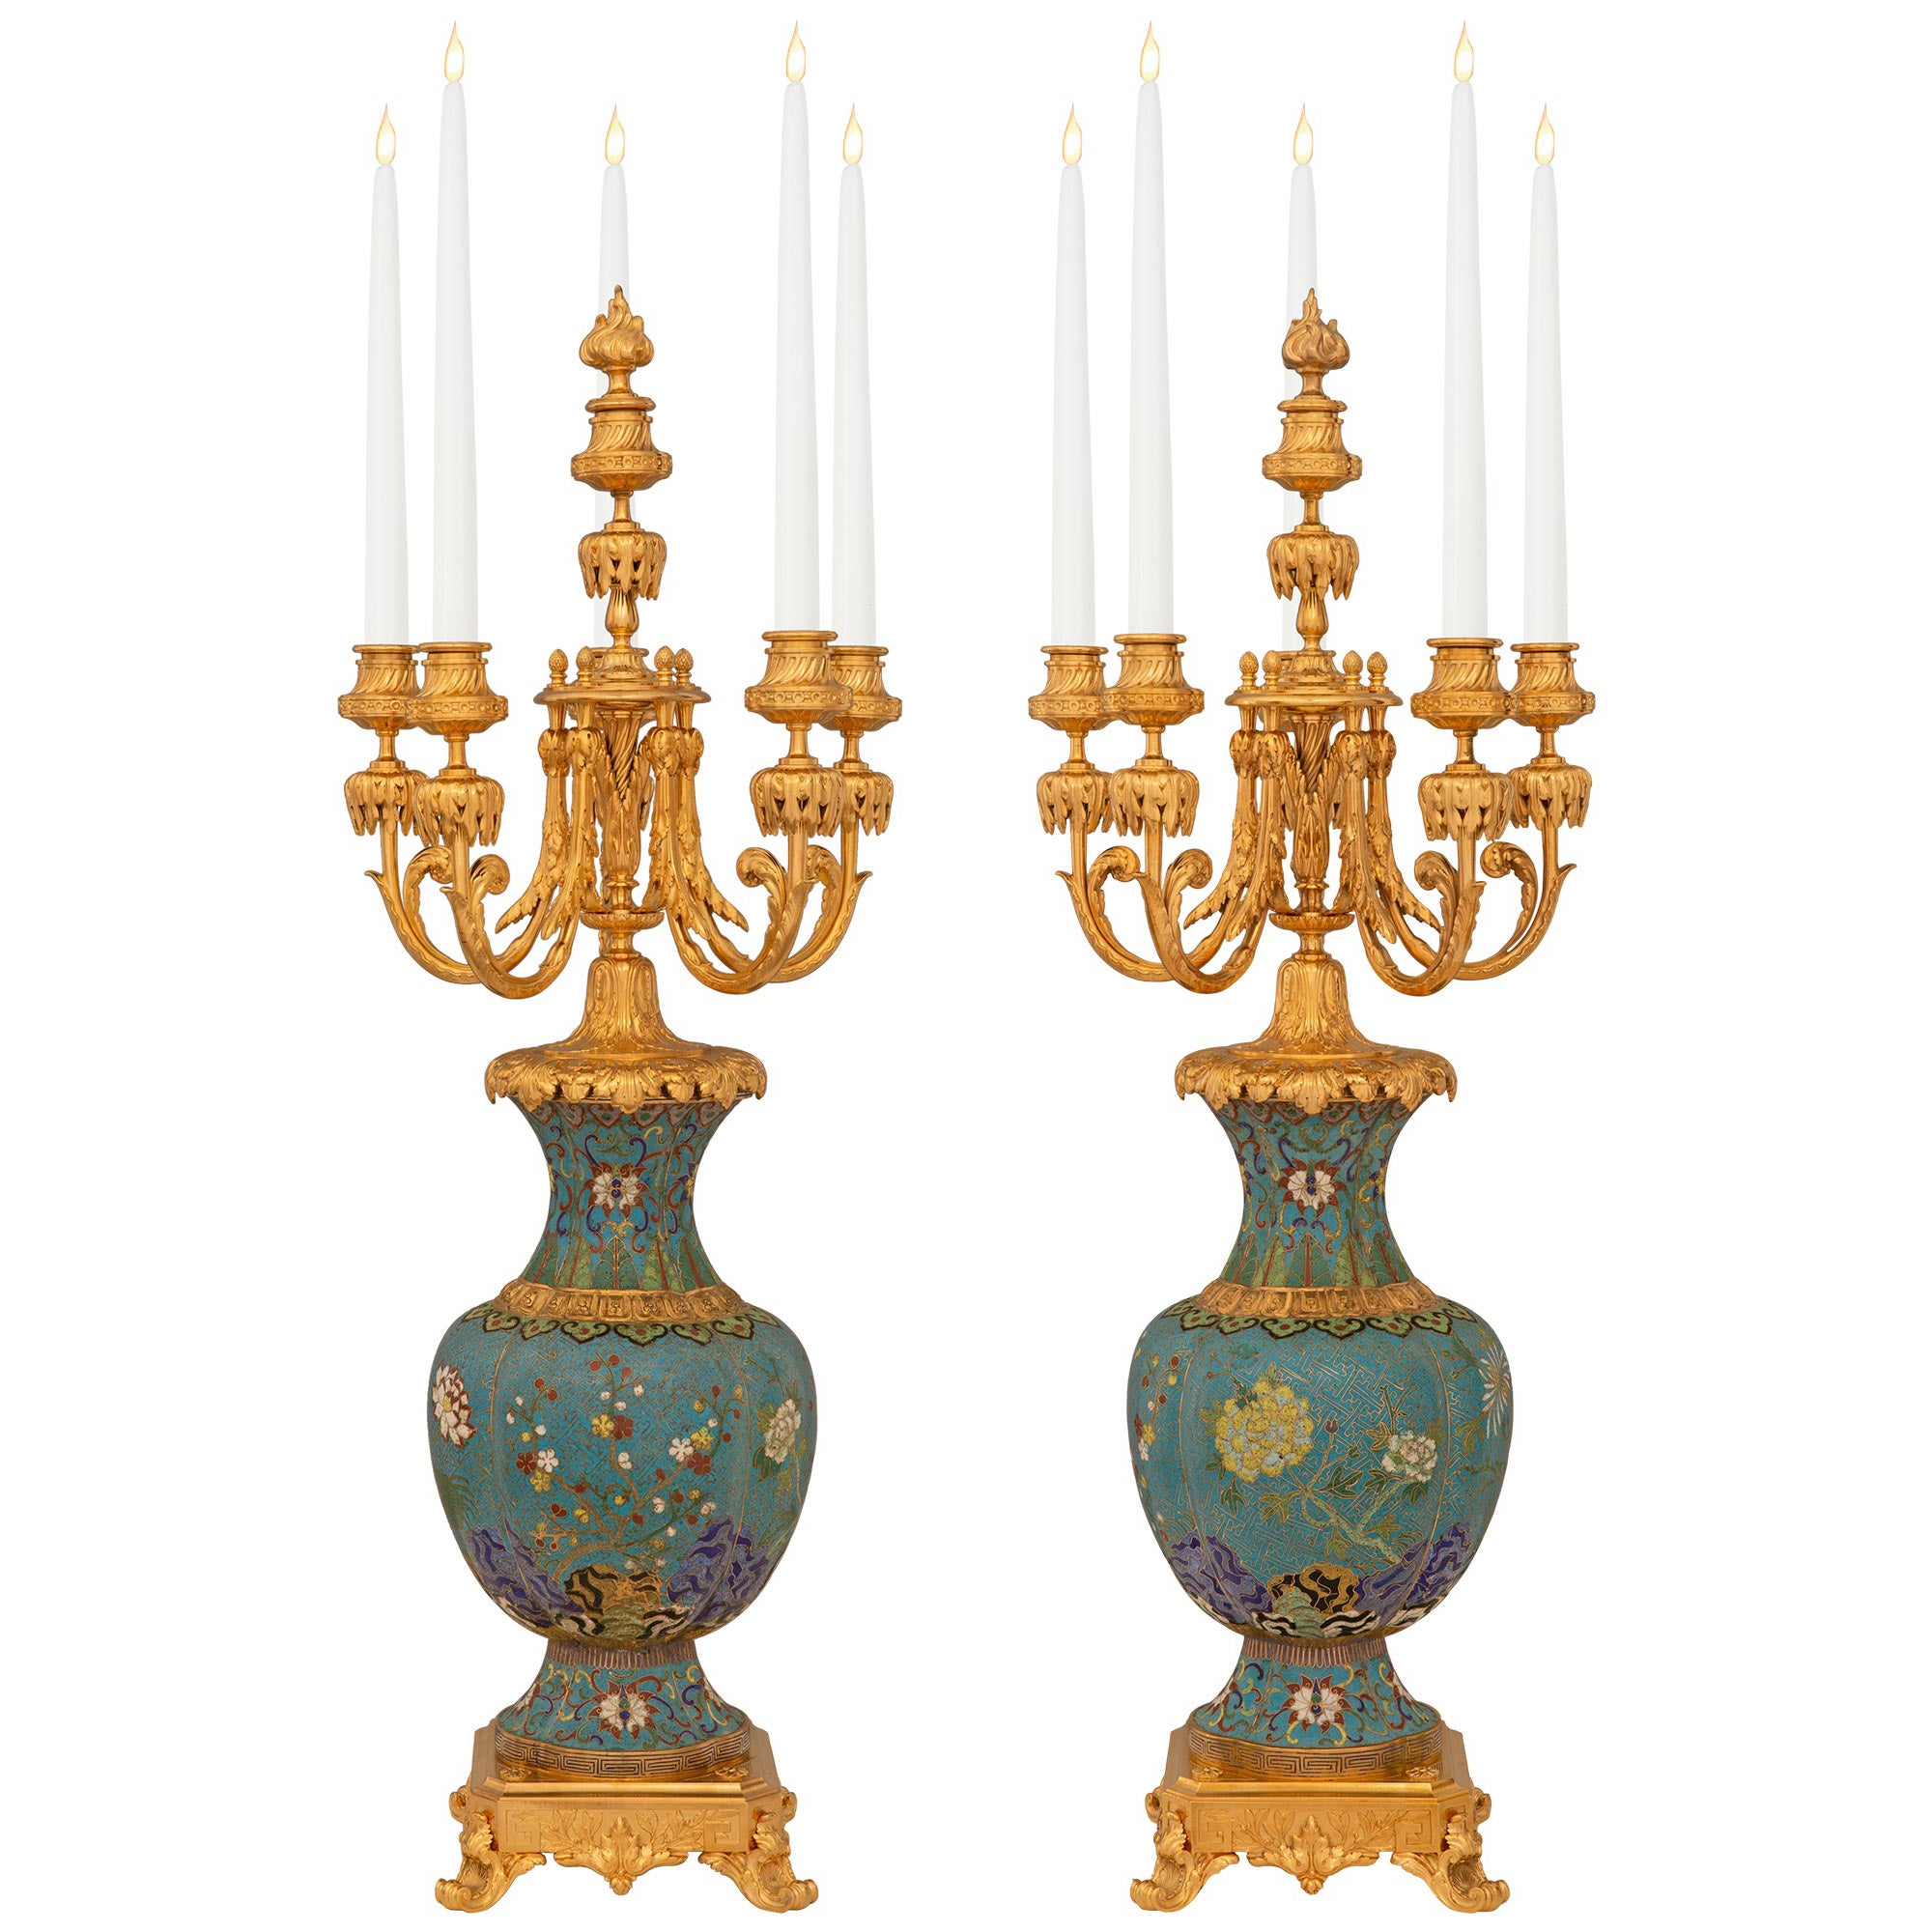 Paire de candélabres en cloisonné et bronze doré de style Louis XV du XIXe siècle